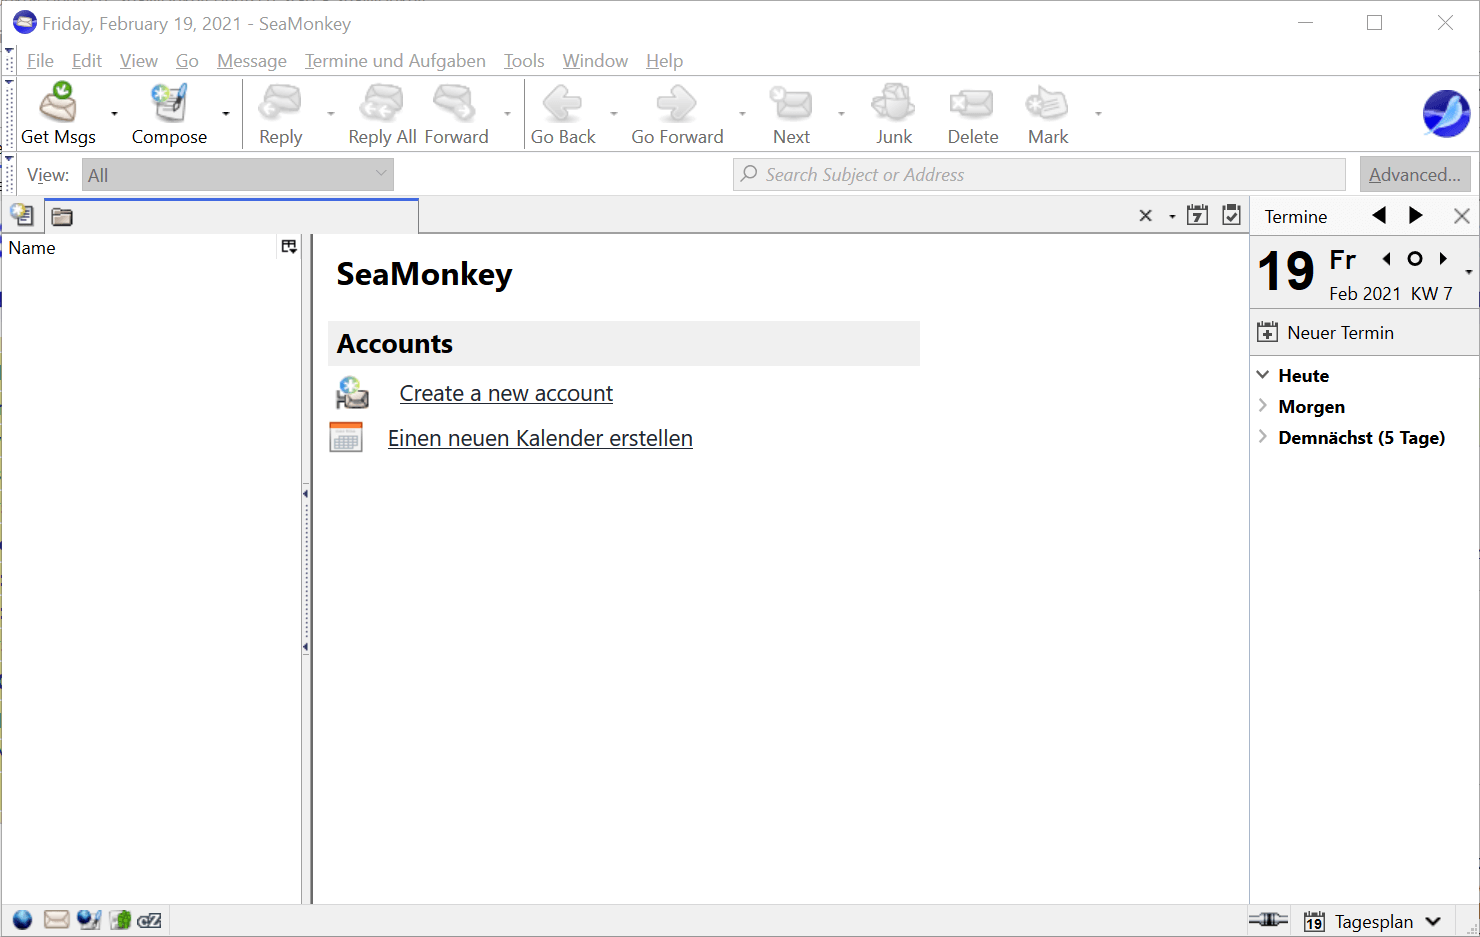 Schermata dell’interfaccia del client di posta elettronica SeaMonkey